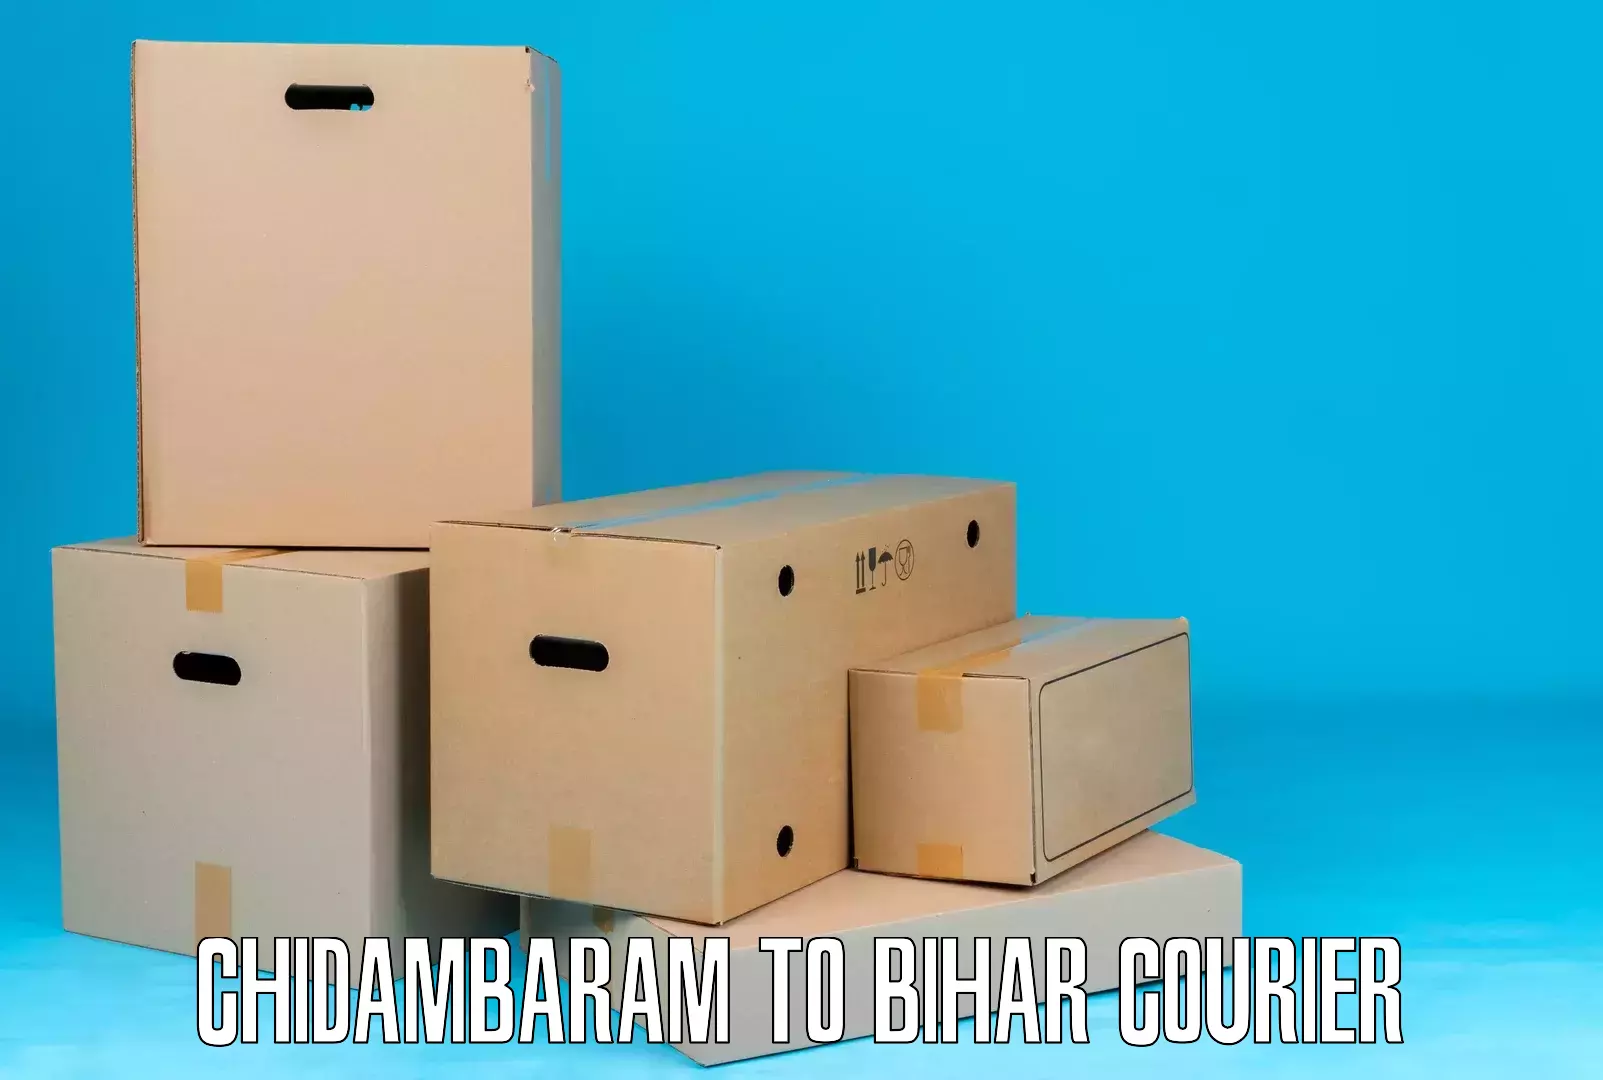 Pharmaceutical courier Chidambaram to Hazrat Jandaha